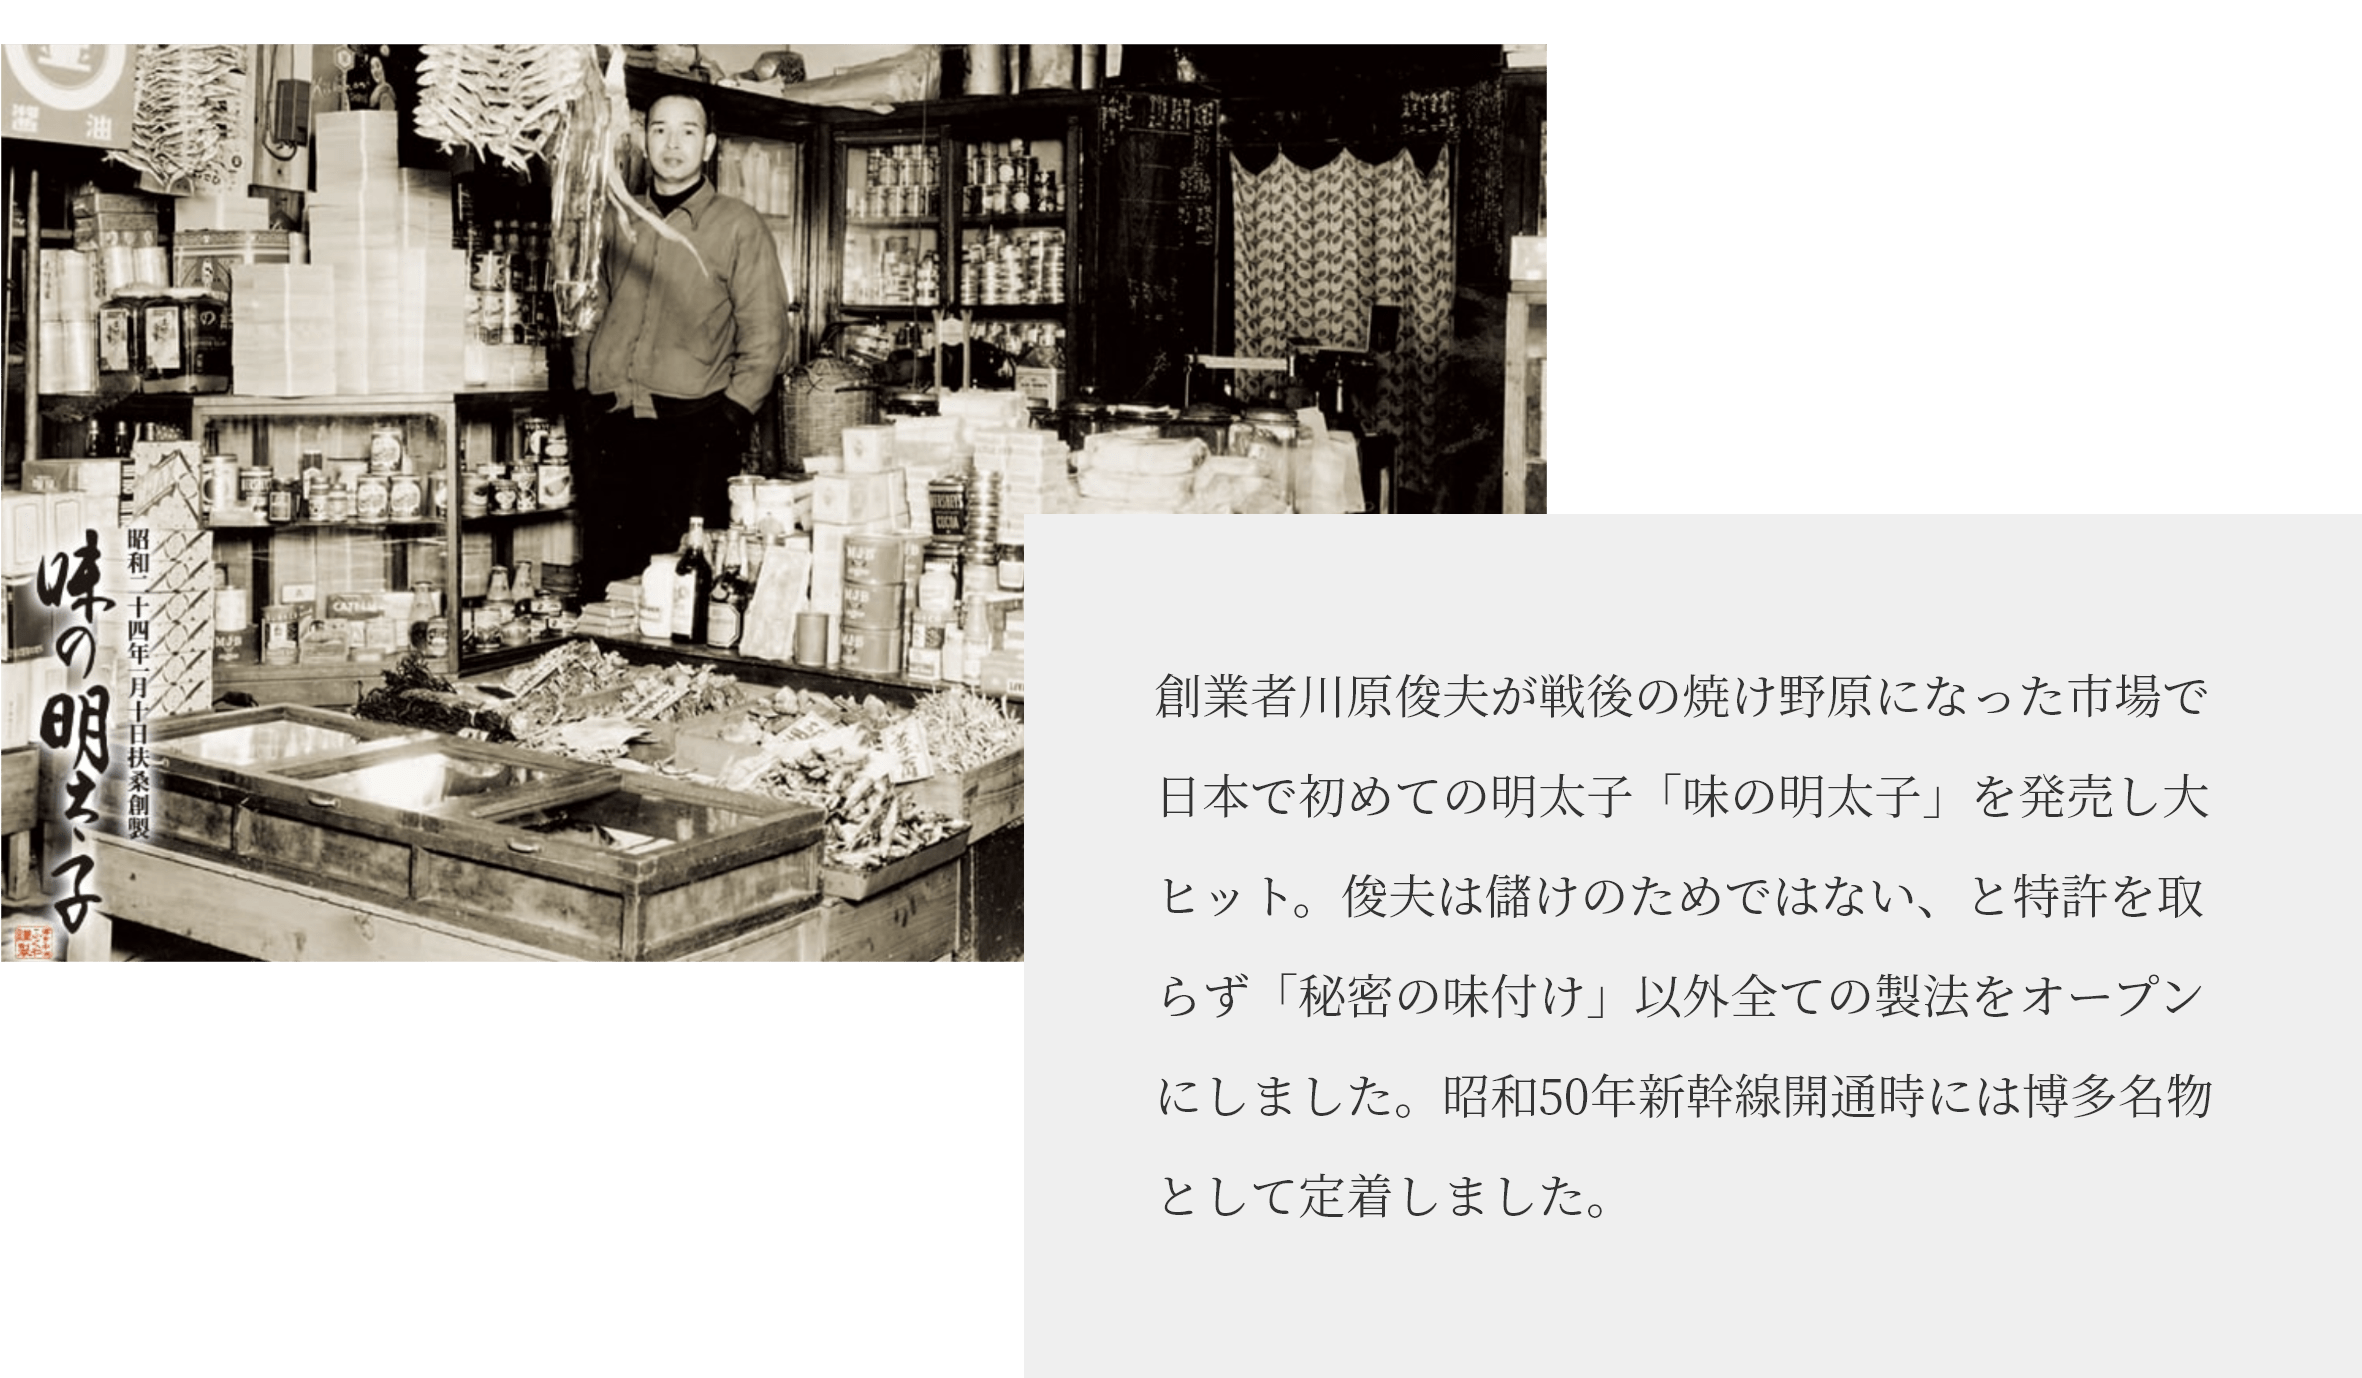 創業者川原俊夫が戦後の焼け野原になった市場で日本で初めての明太子「味の明太子」を発売し大ヒット。俊夫は儲けのためではない、と特許を取らず「秘密の味付け」以外全ての製法をオープンにしました。昭和50年の新幹線開通時には博多名物として定着しました。